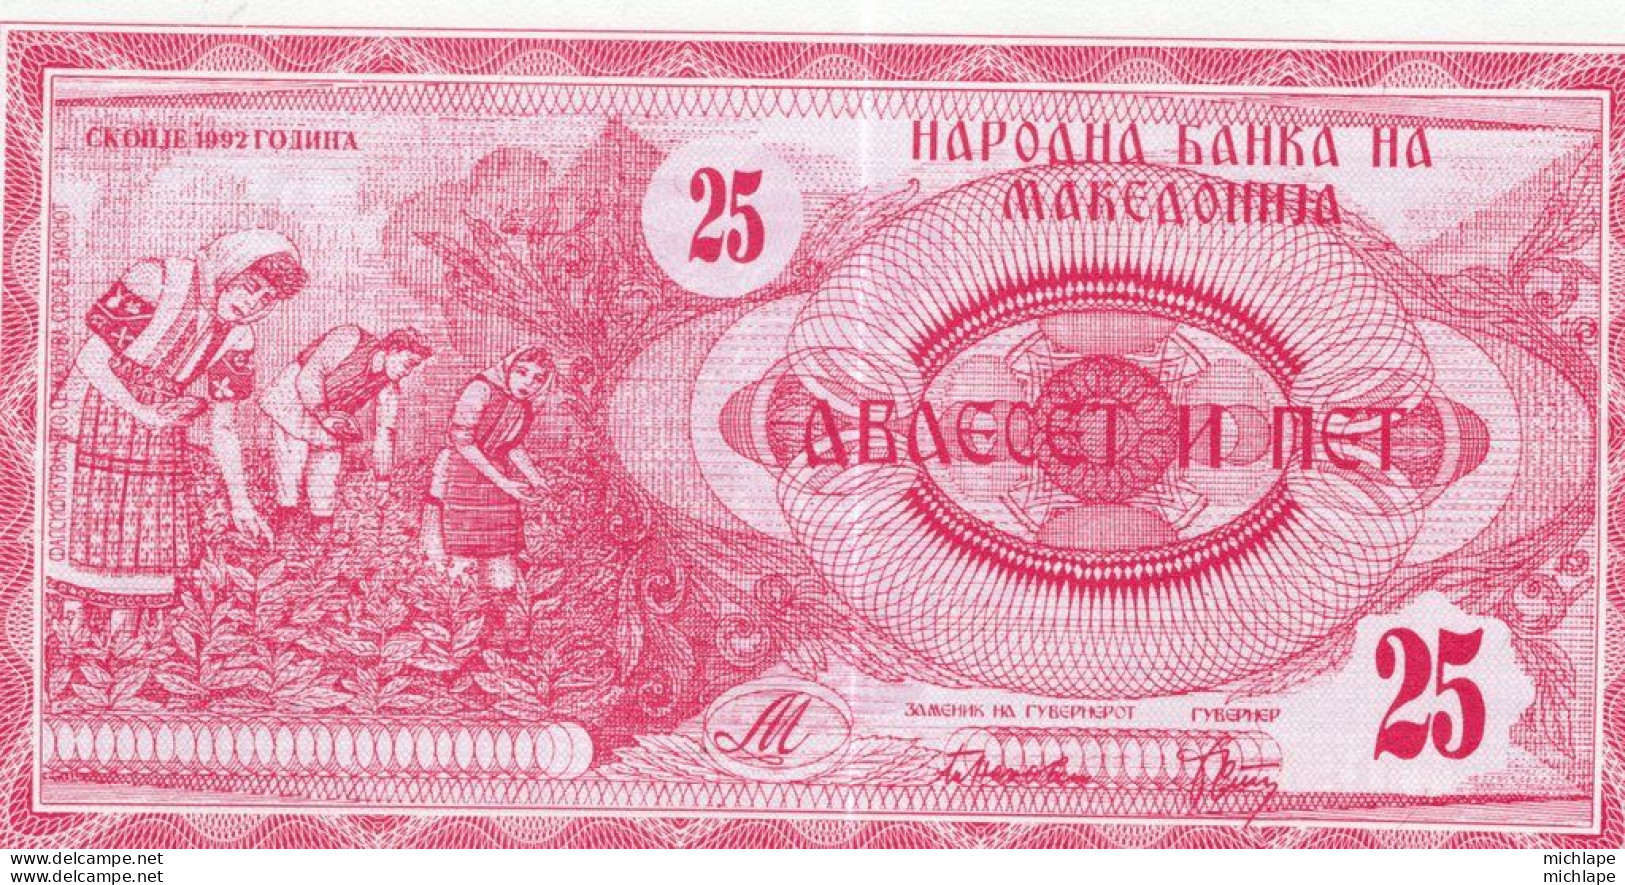 Billet   Macedoine MACEDONIA 25 Dinars 1992 Neuf - North Macedonia